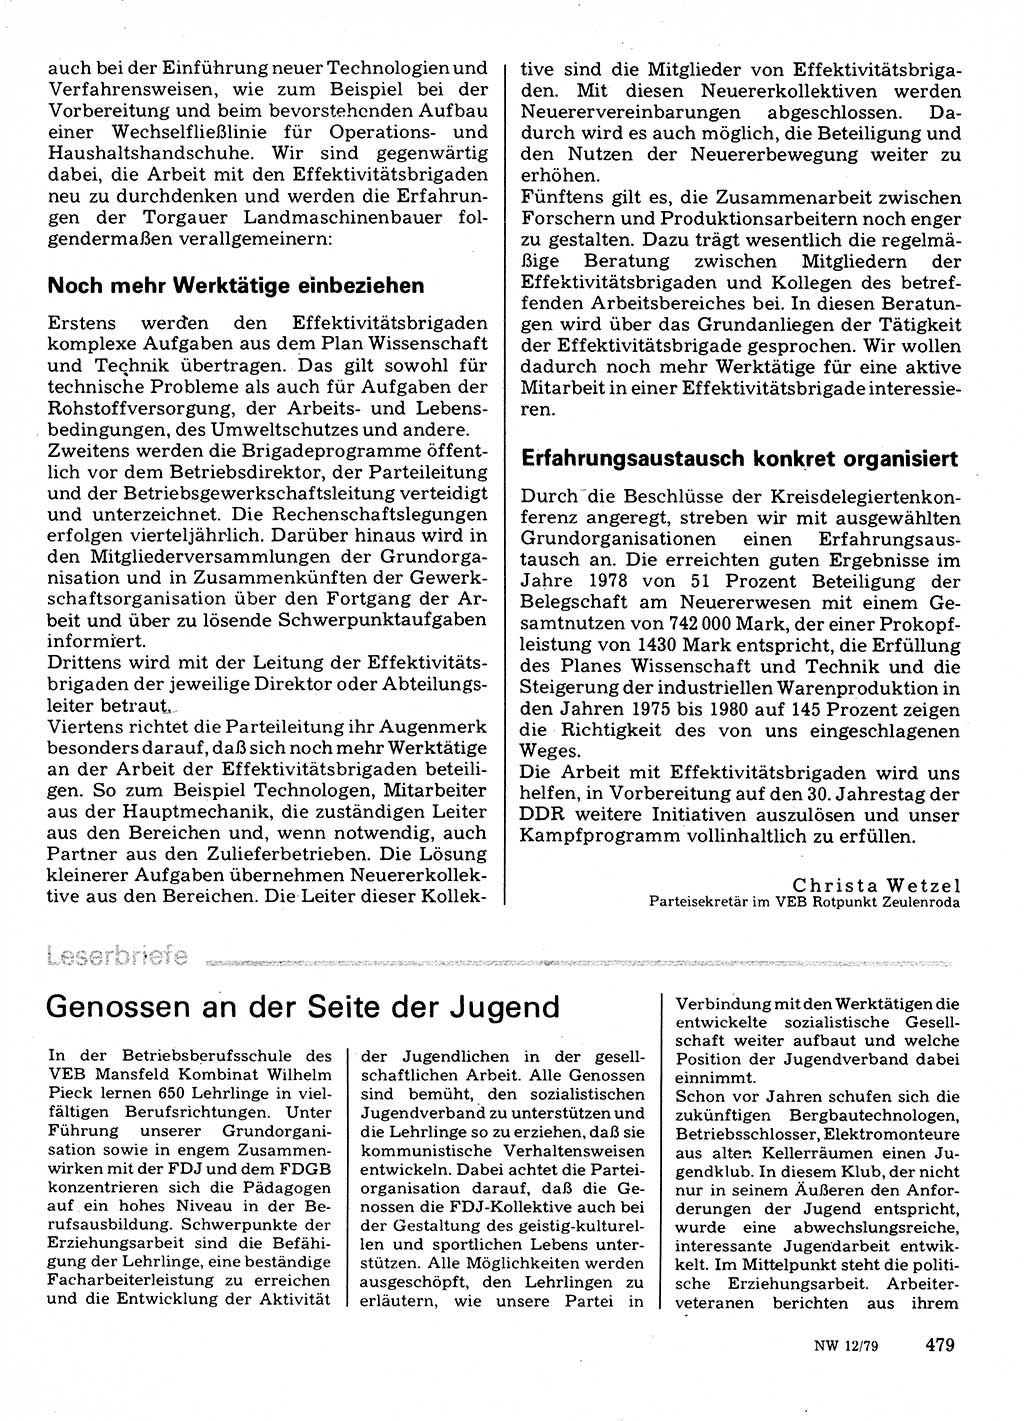 Neuer Weg (NW), Organ des Zentralkomitees (ZK) der SED (Sozialistische Einheitspartei Deutschlands) für Fragen des Parteilebens, 34. Jahrgang [Deutsche Demokratische Republik (DDR)] 1979, Seite 479 (NW ZK SED DDR 1979, S. 479)